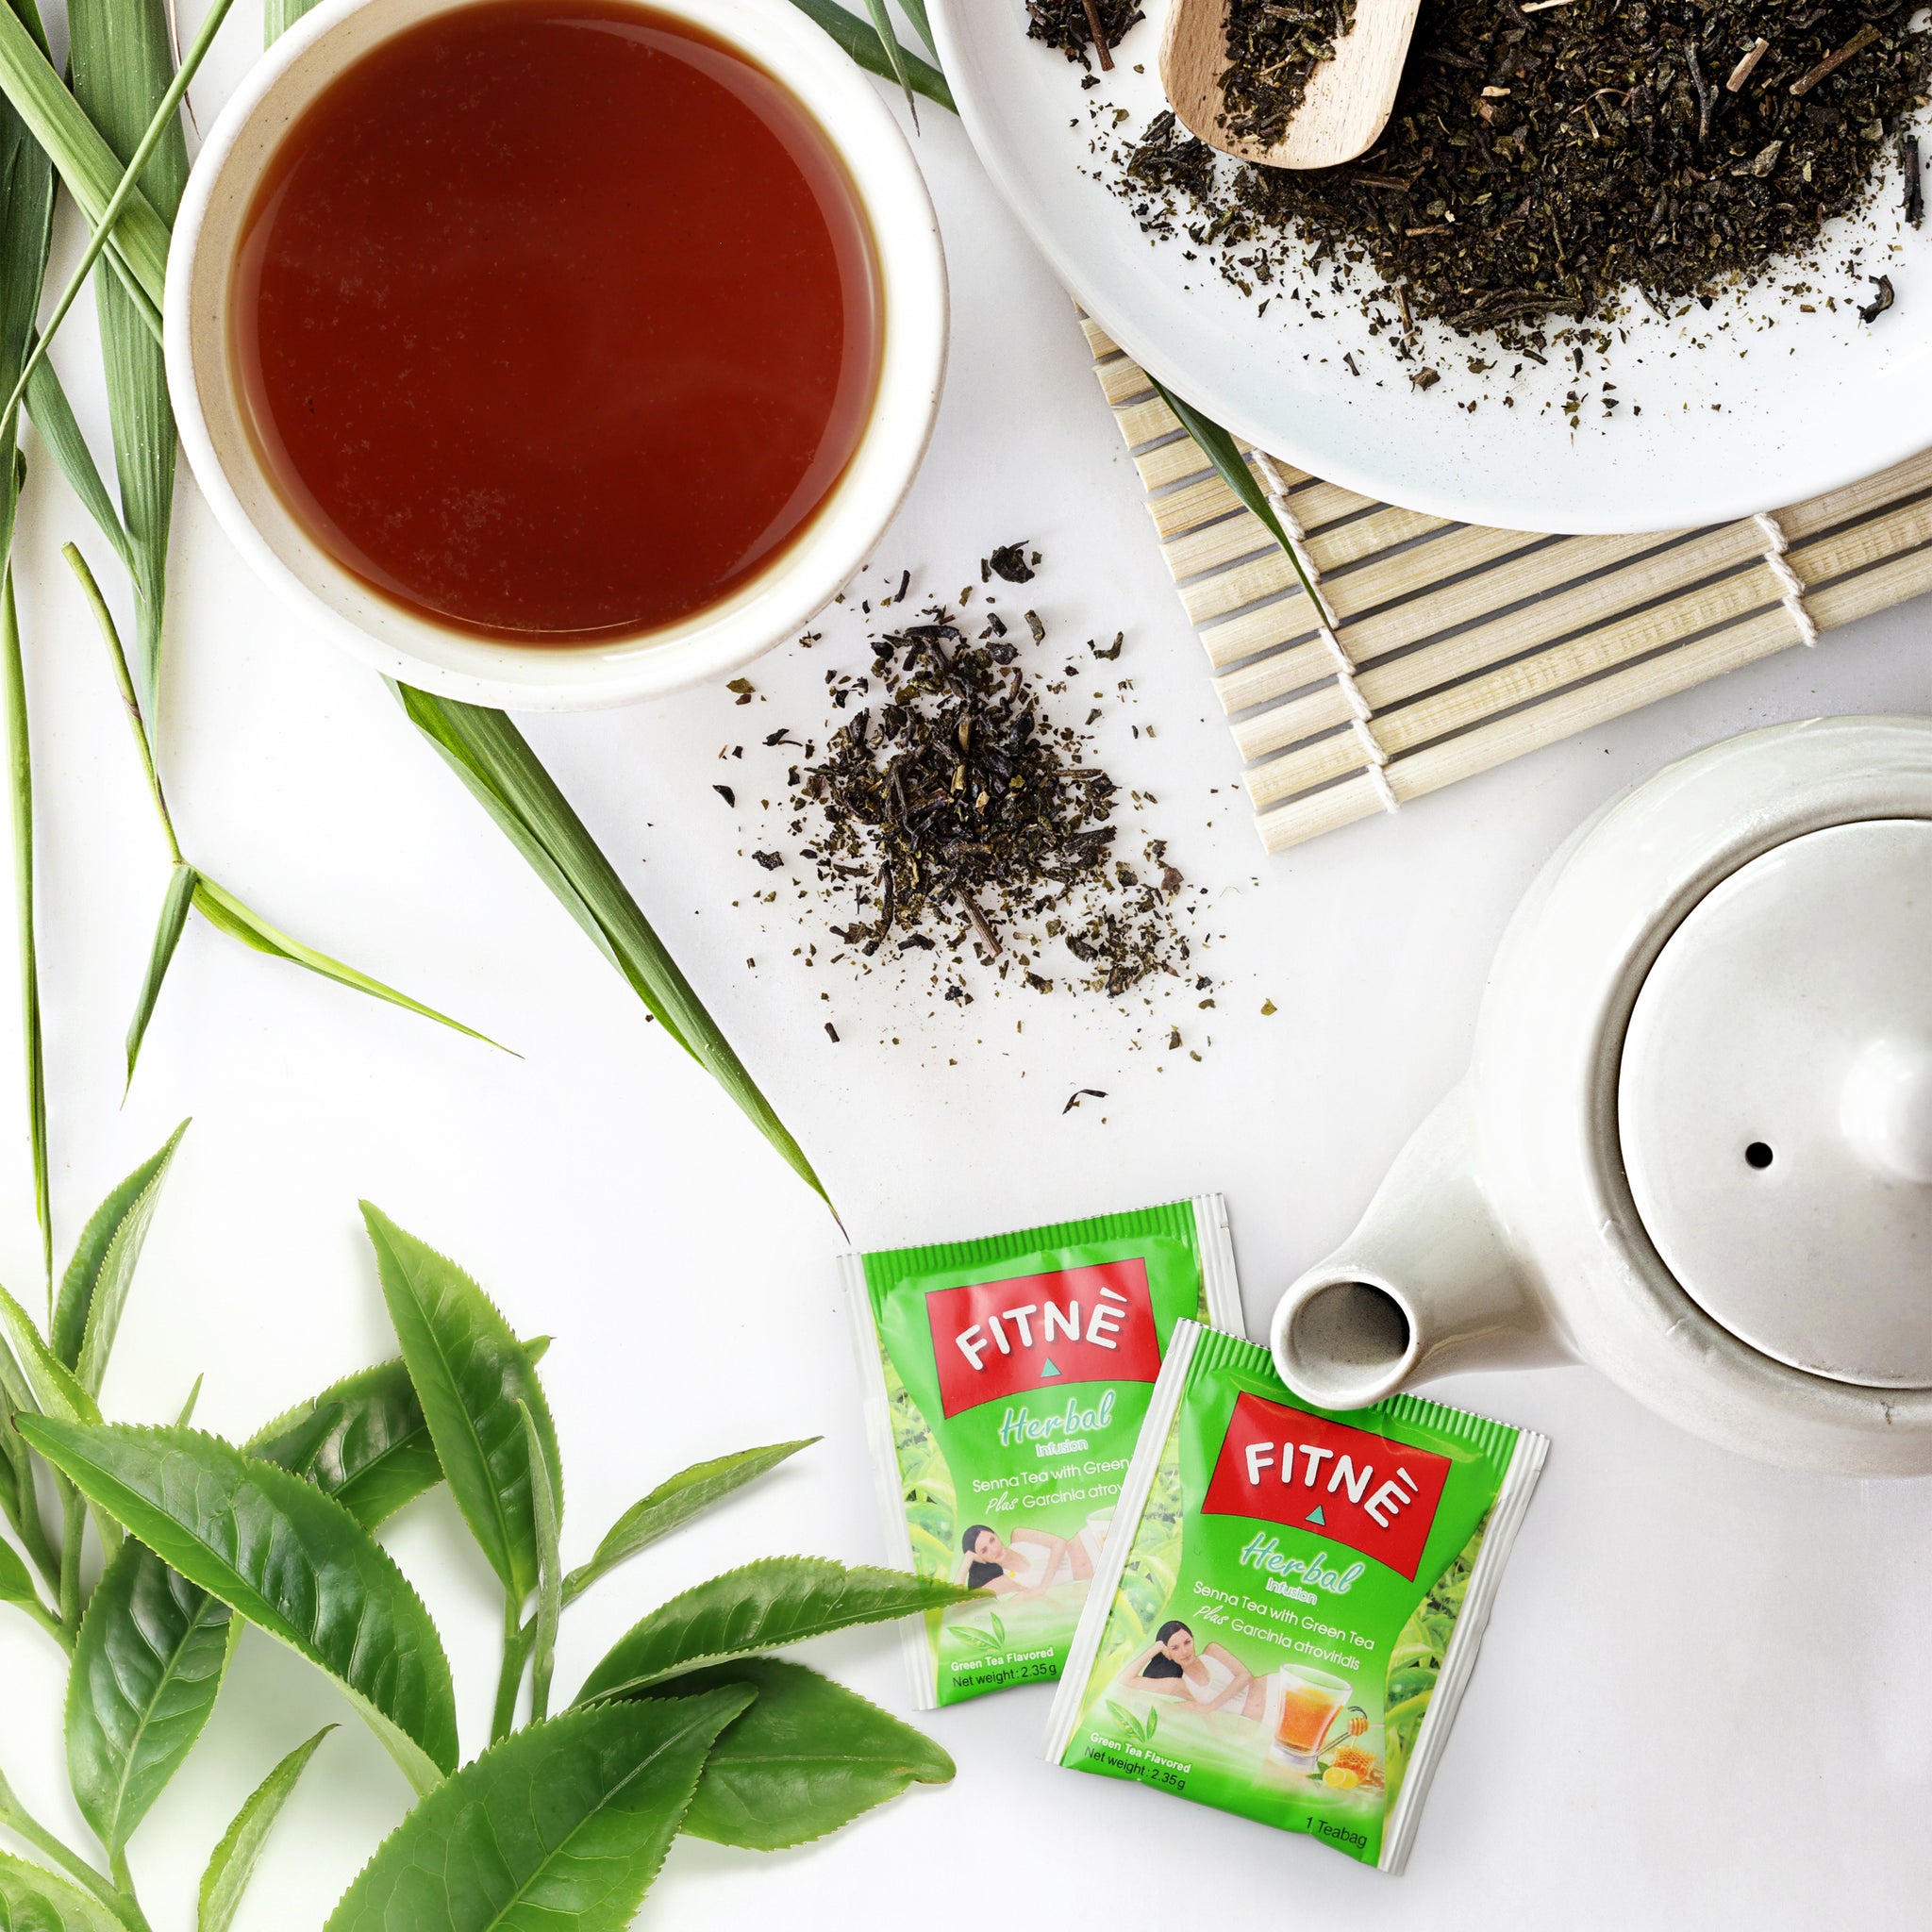 Buy FITNE Herbal Senna Tea, Natural Detox Cleansing Tea, No Calories - FITNÈ